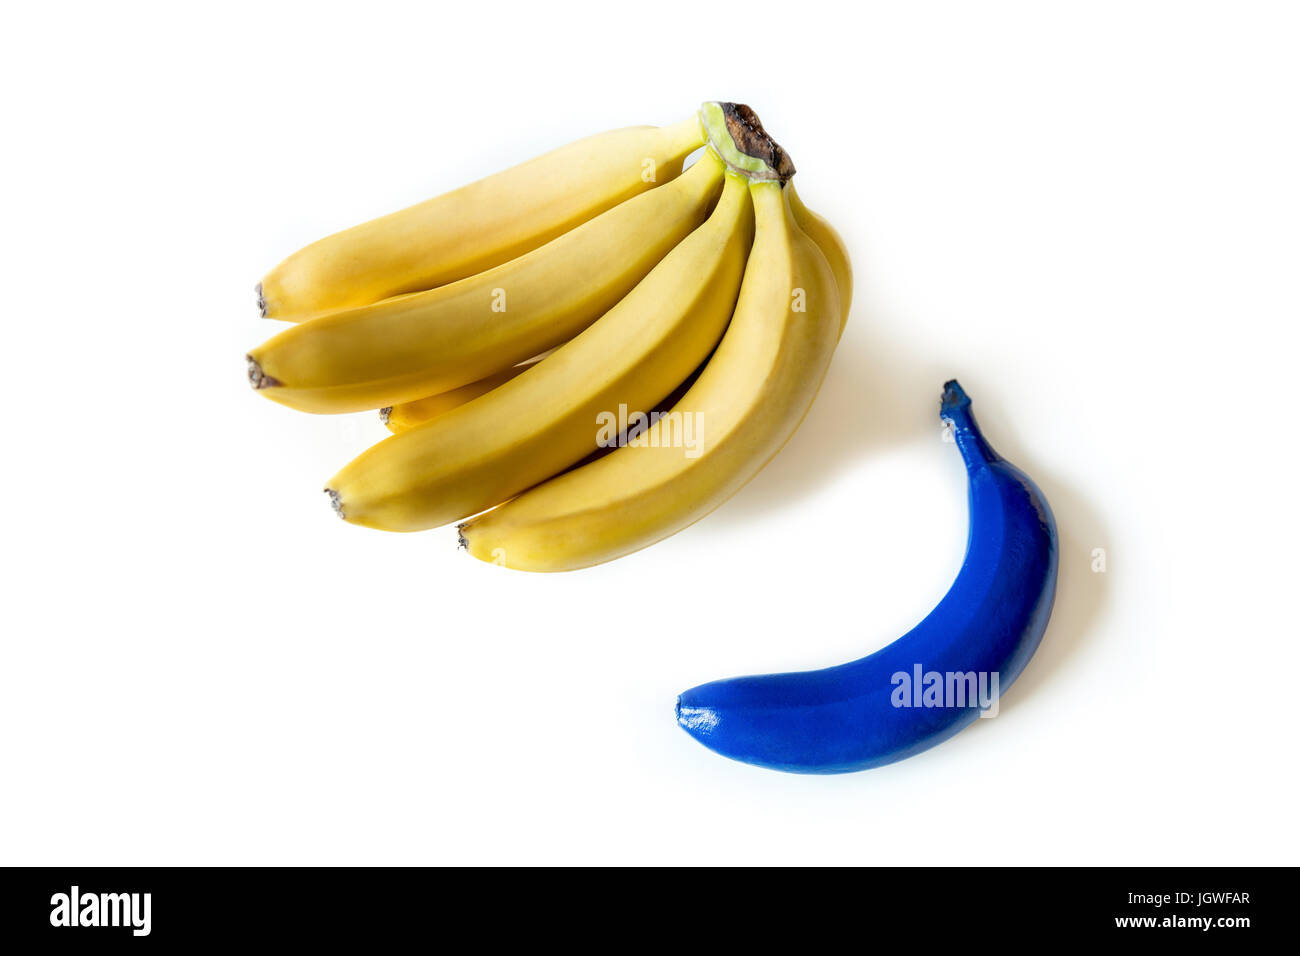 Vue rapprochée de tas de bananes mûres fraîches et un bleu isolated on white Banque D'Images